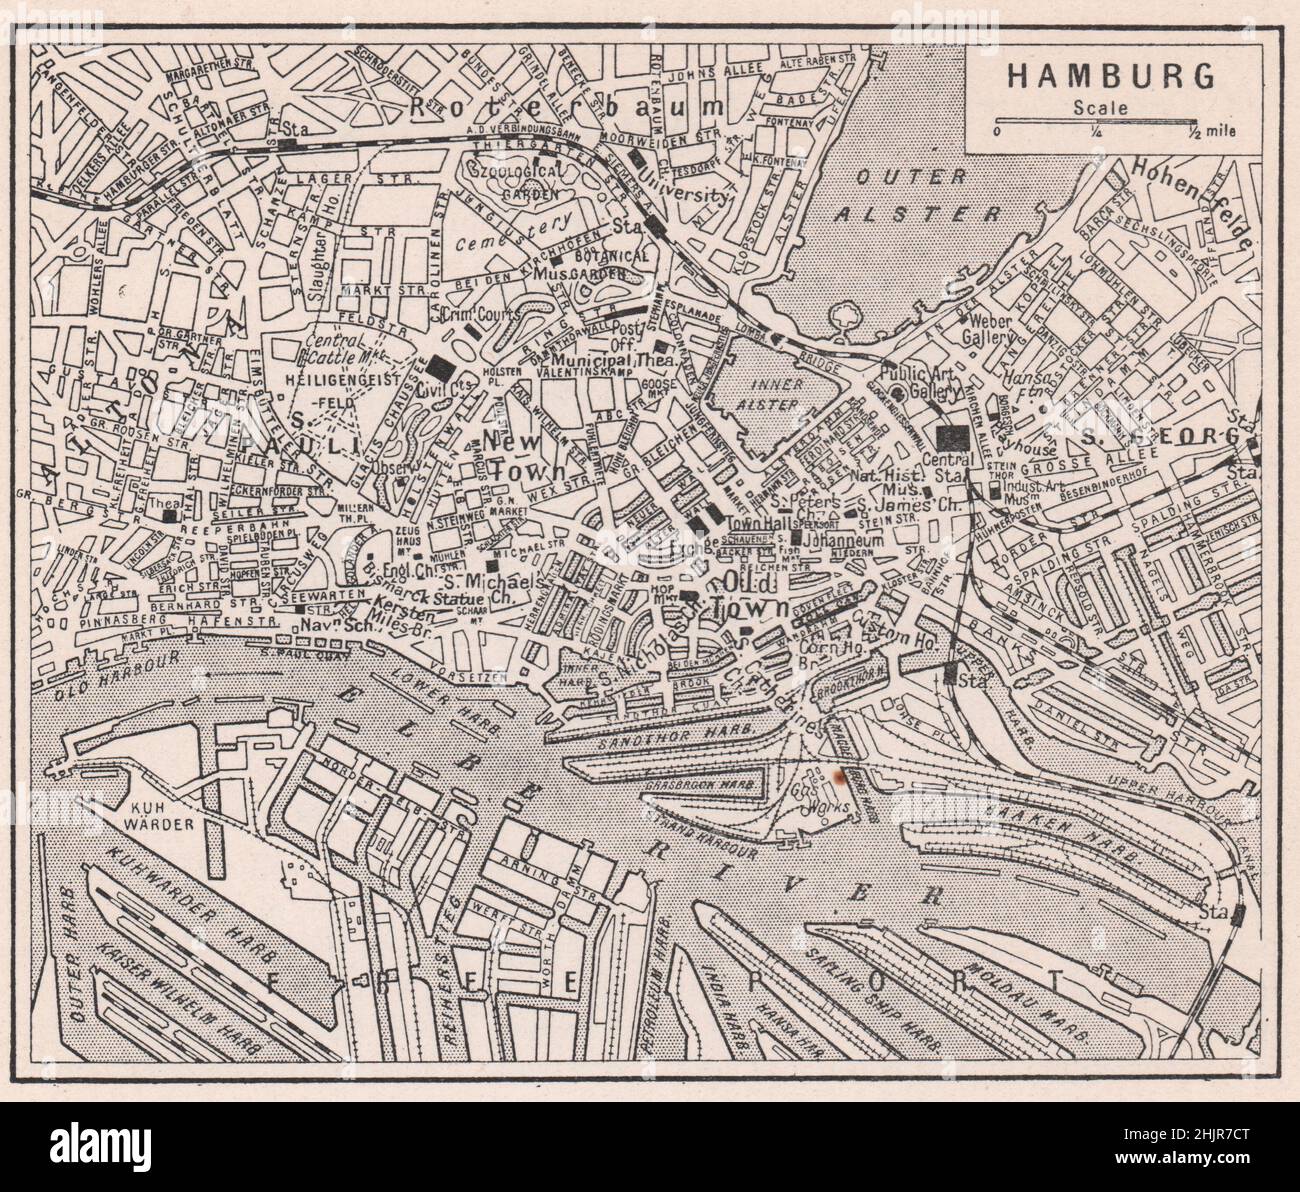 Labyrinthe de quais et bassins de Hambourg bordant l'Elbe. Allemagne (carte 1923) Banque D'Images